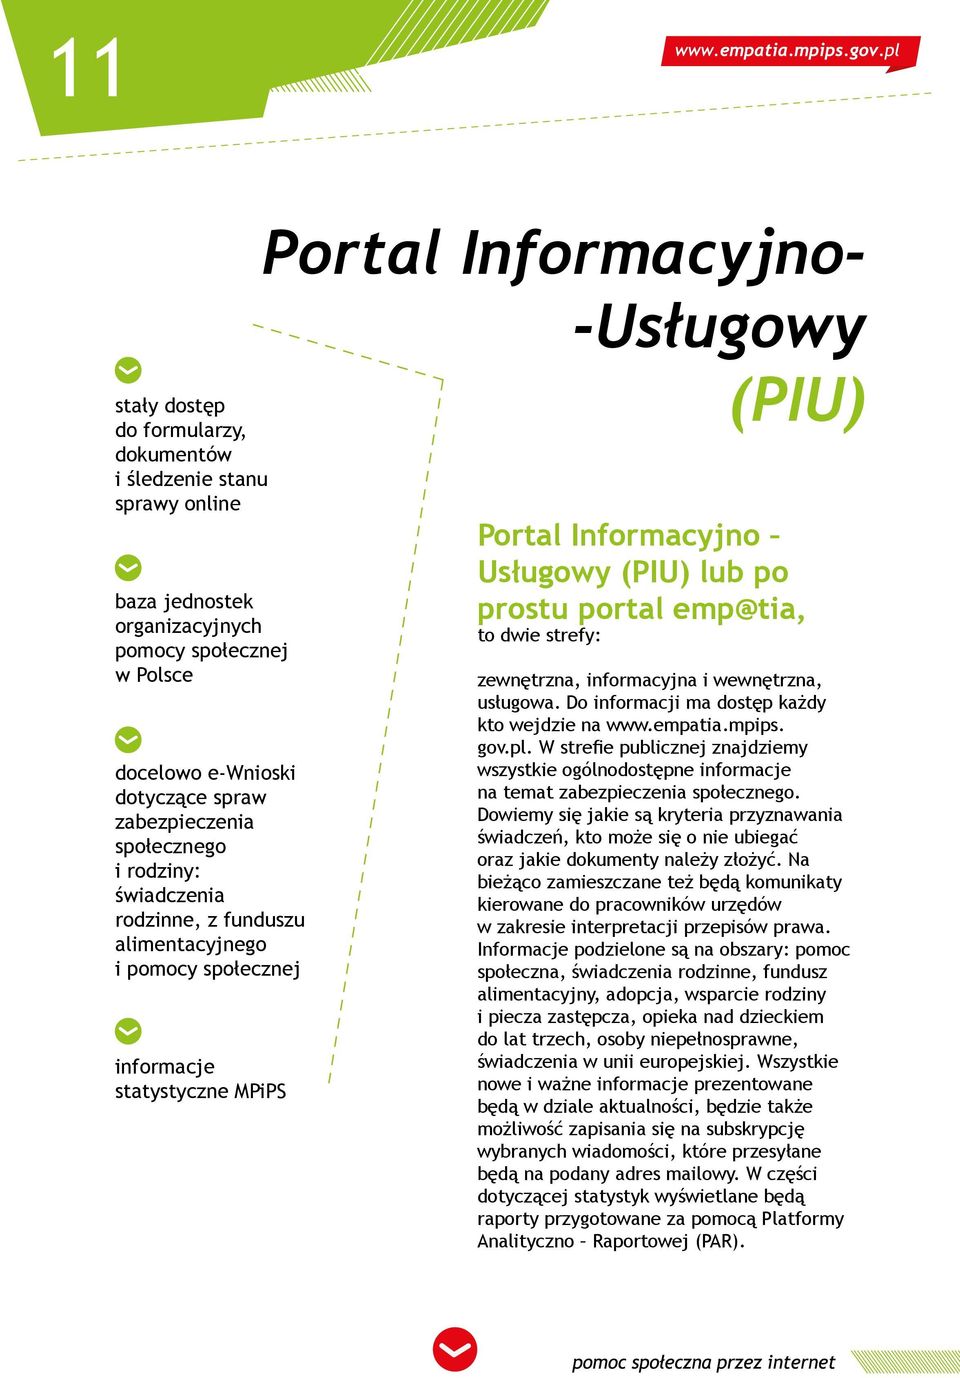 portal emp@tia, to dwie strefy: zewnętrzna, informacyjna i wewnętrzna, usługowa. Do informacji ma dostęp każdy kto wejdzie na www.empatia.mpips. gov.pl.